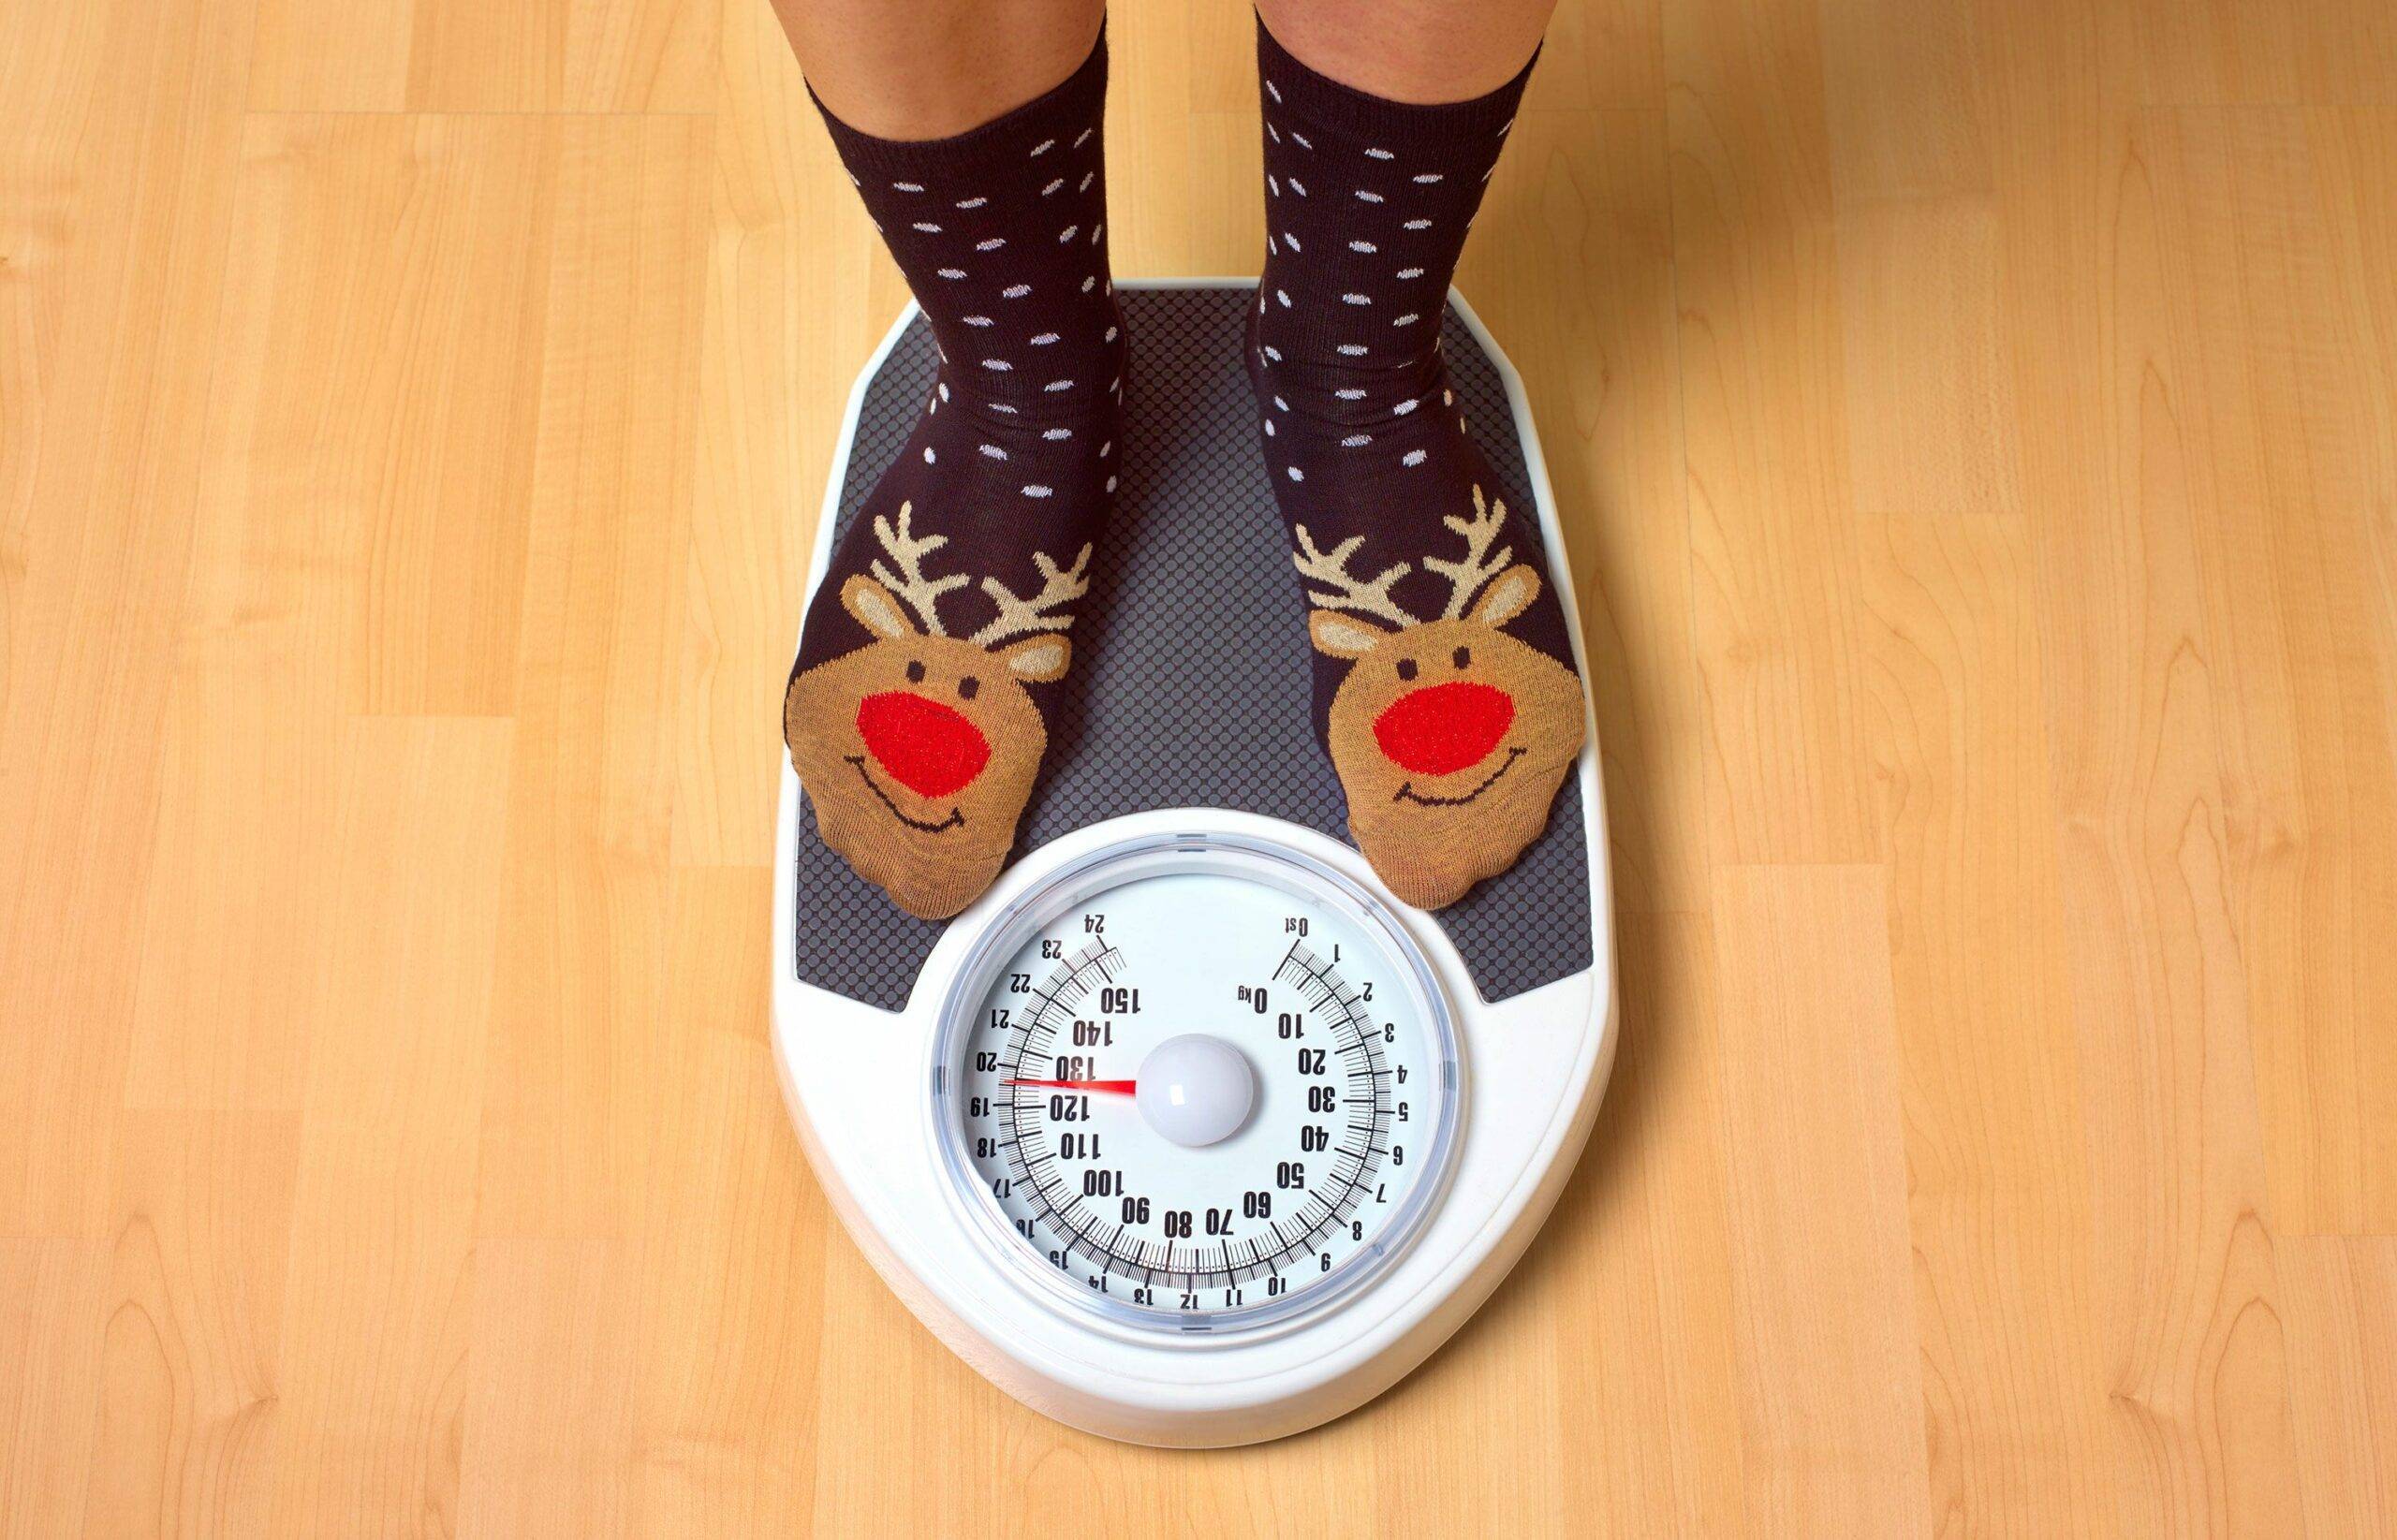 20 советов, как не набрать лишний вес после новогодних каникул